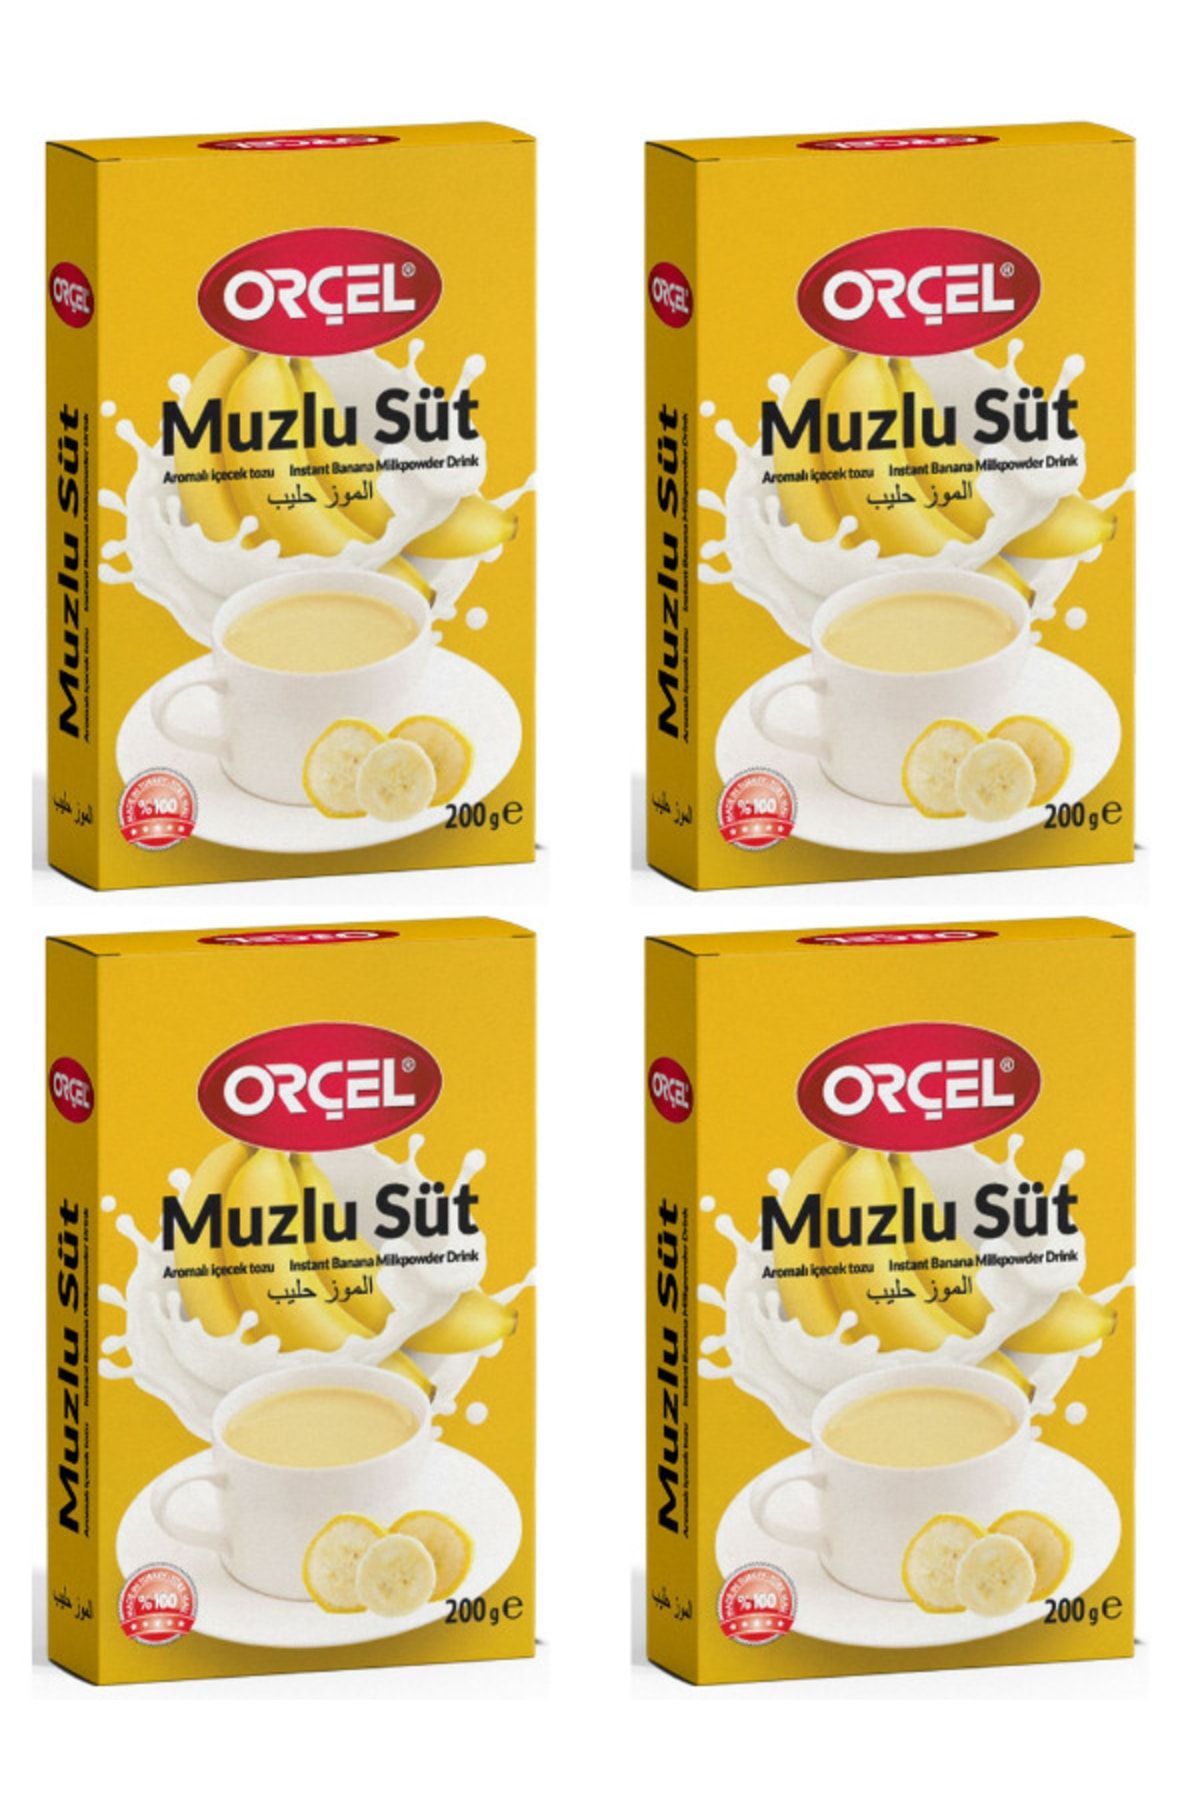 ORÇEL Muzlu Süt Aromalı Içecek Tozu Oralet Çay 4 X 200gr.